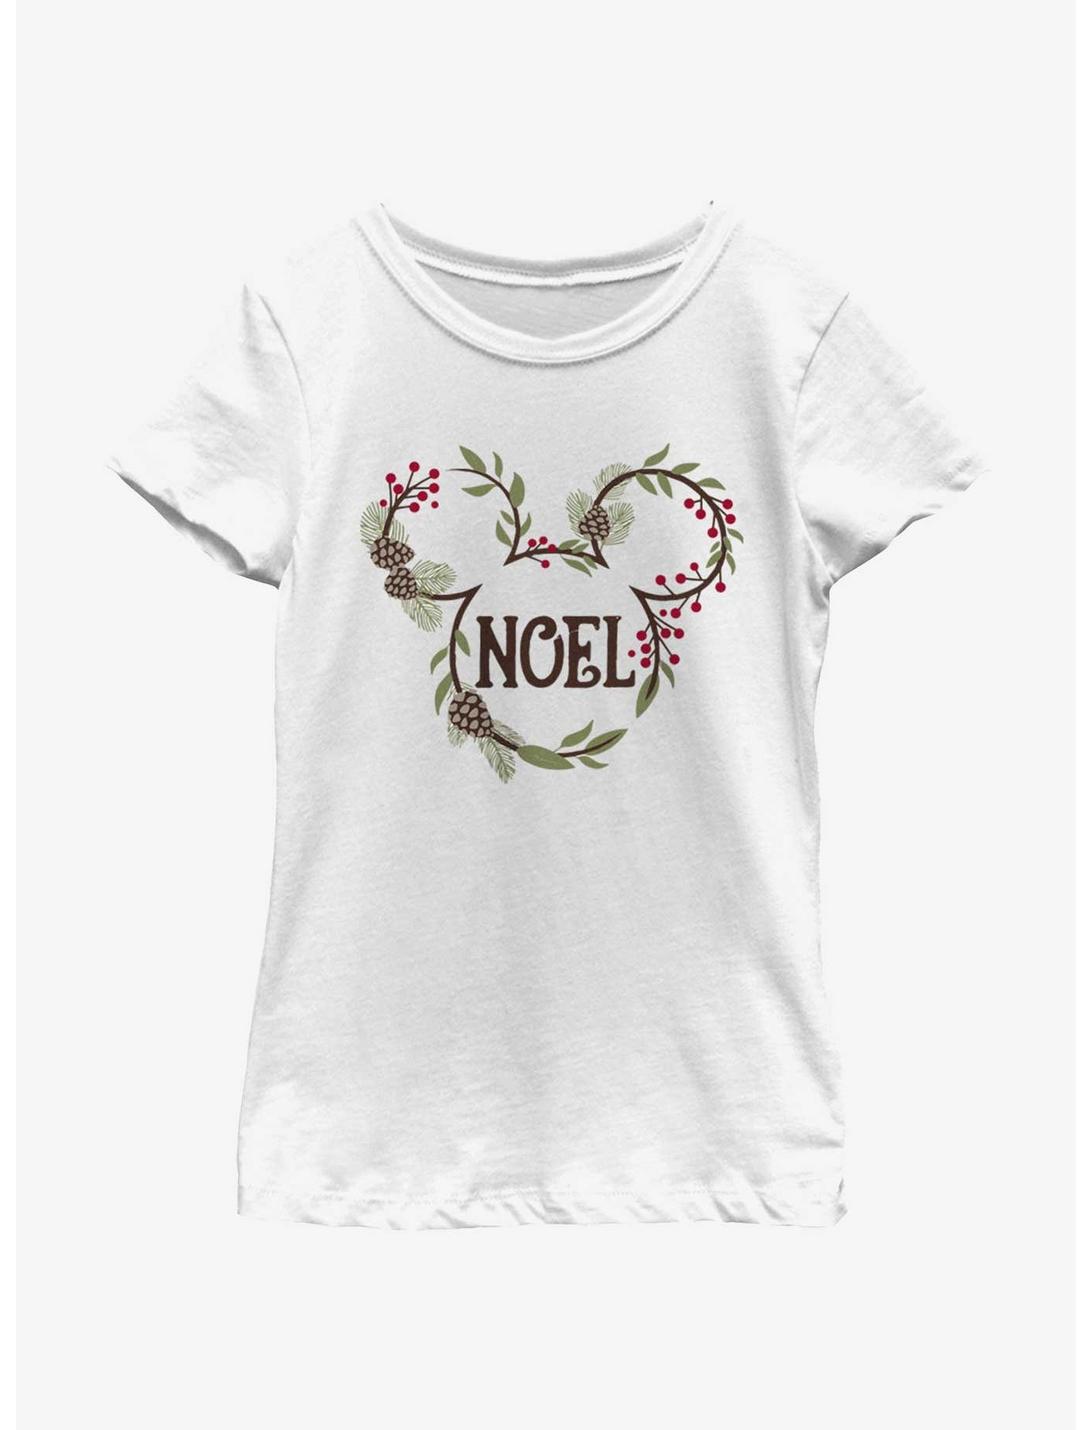 Disney Mickey Mouse Noel Mistletoe Ears Youth Girls T-Shirt, WHITE, hi-res